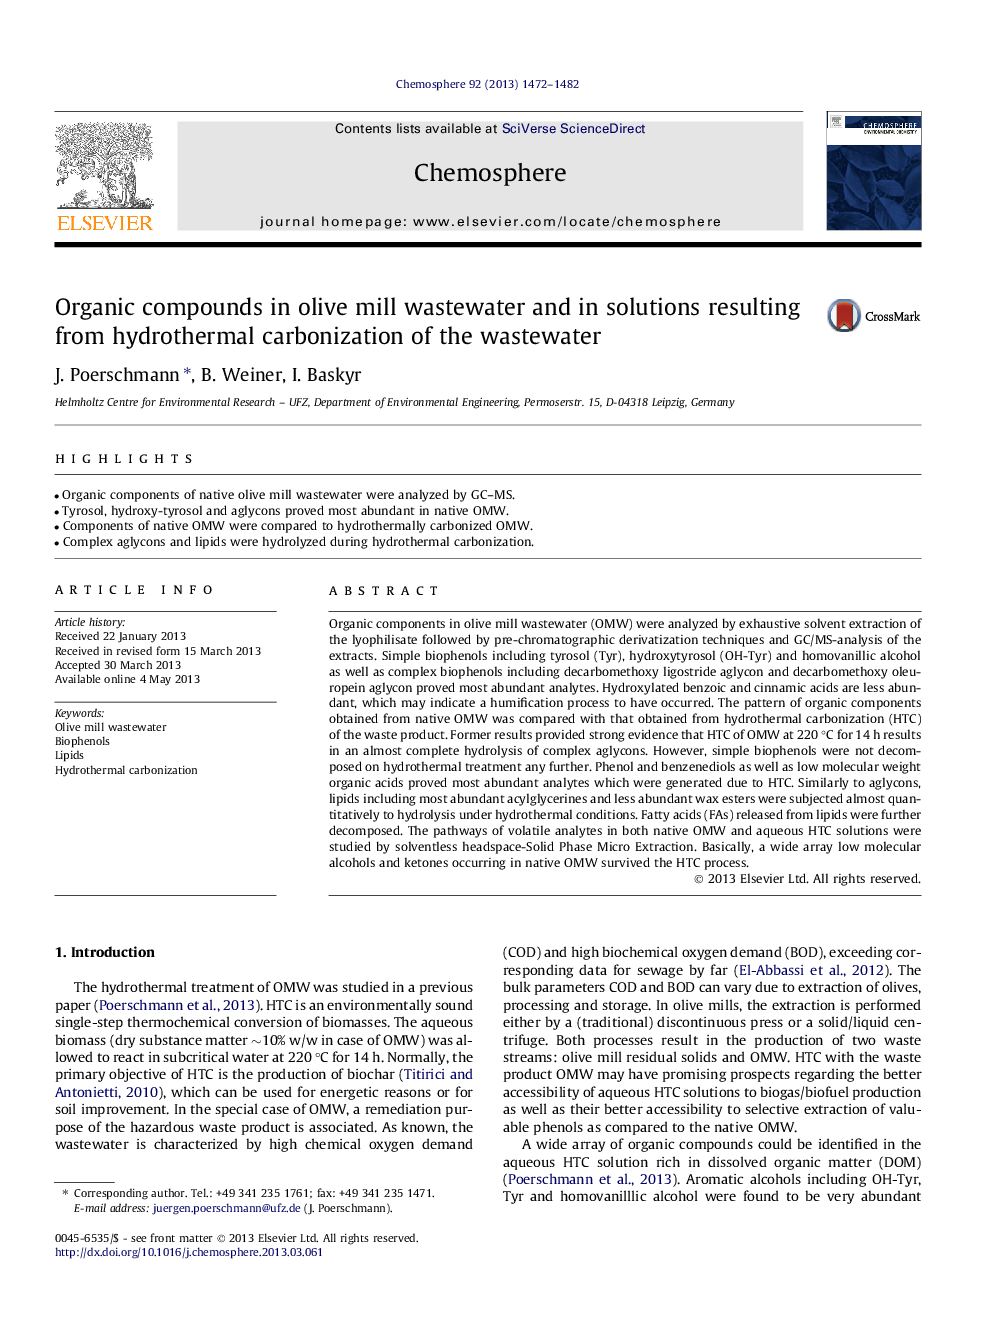 ترکیبات آلی در فاضلاب آسیاب زیتون و در محلول های حاصل از کربنیزاسیون هیدروترمال فاضلاب 